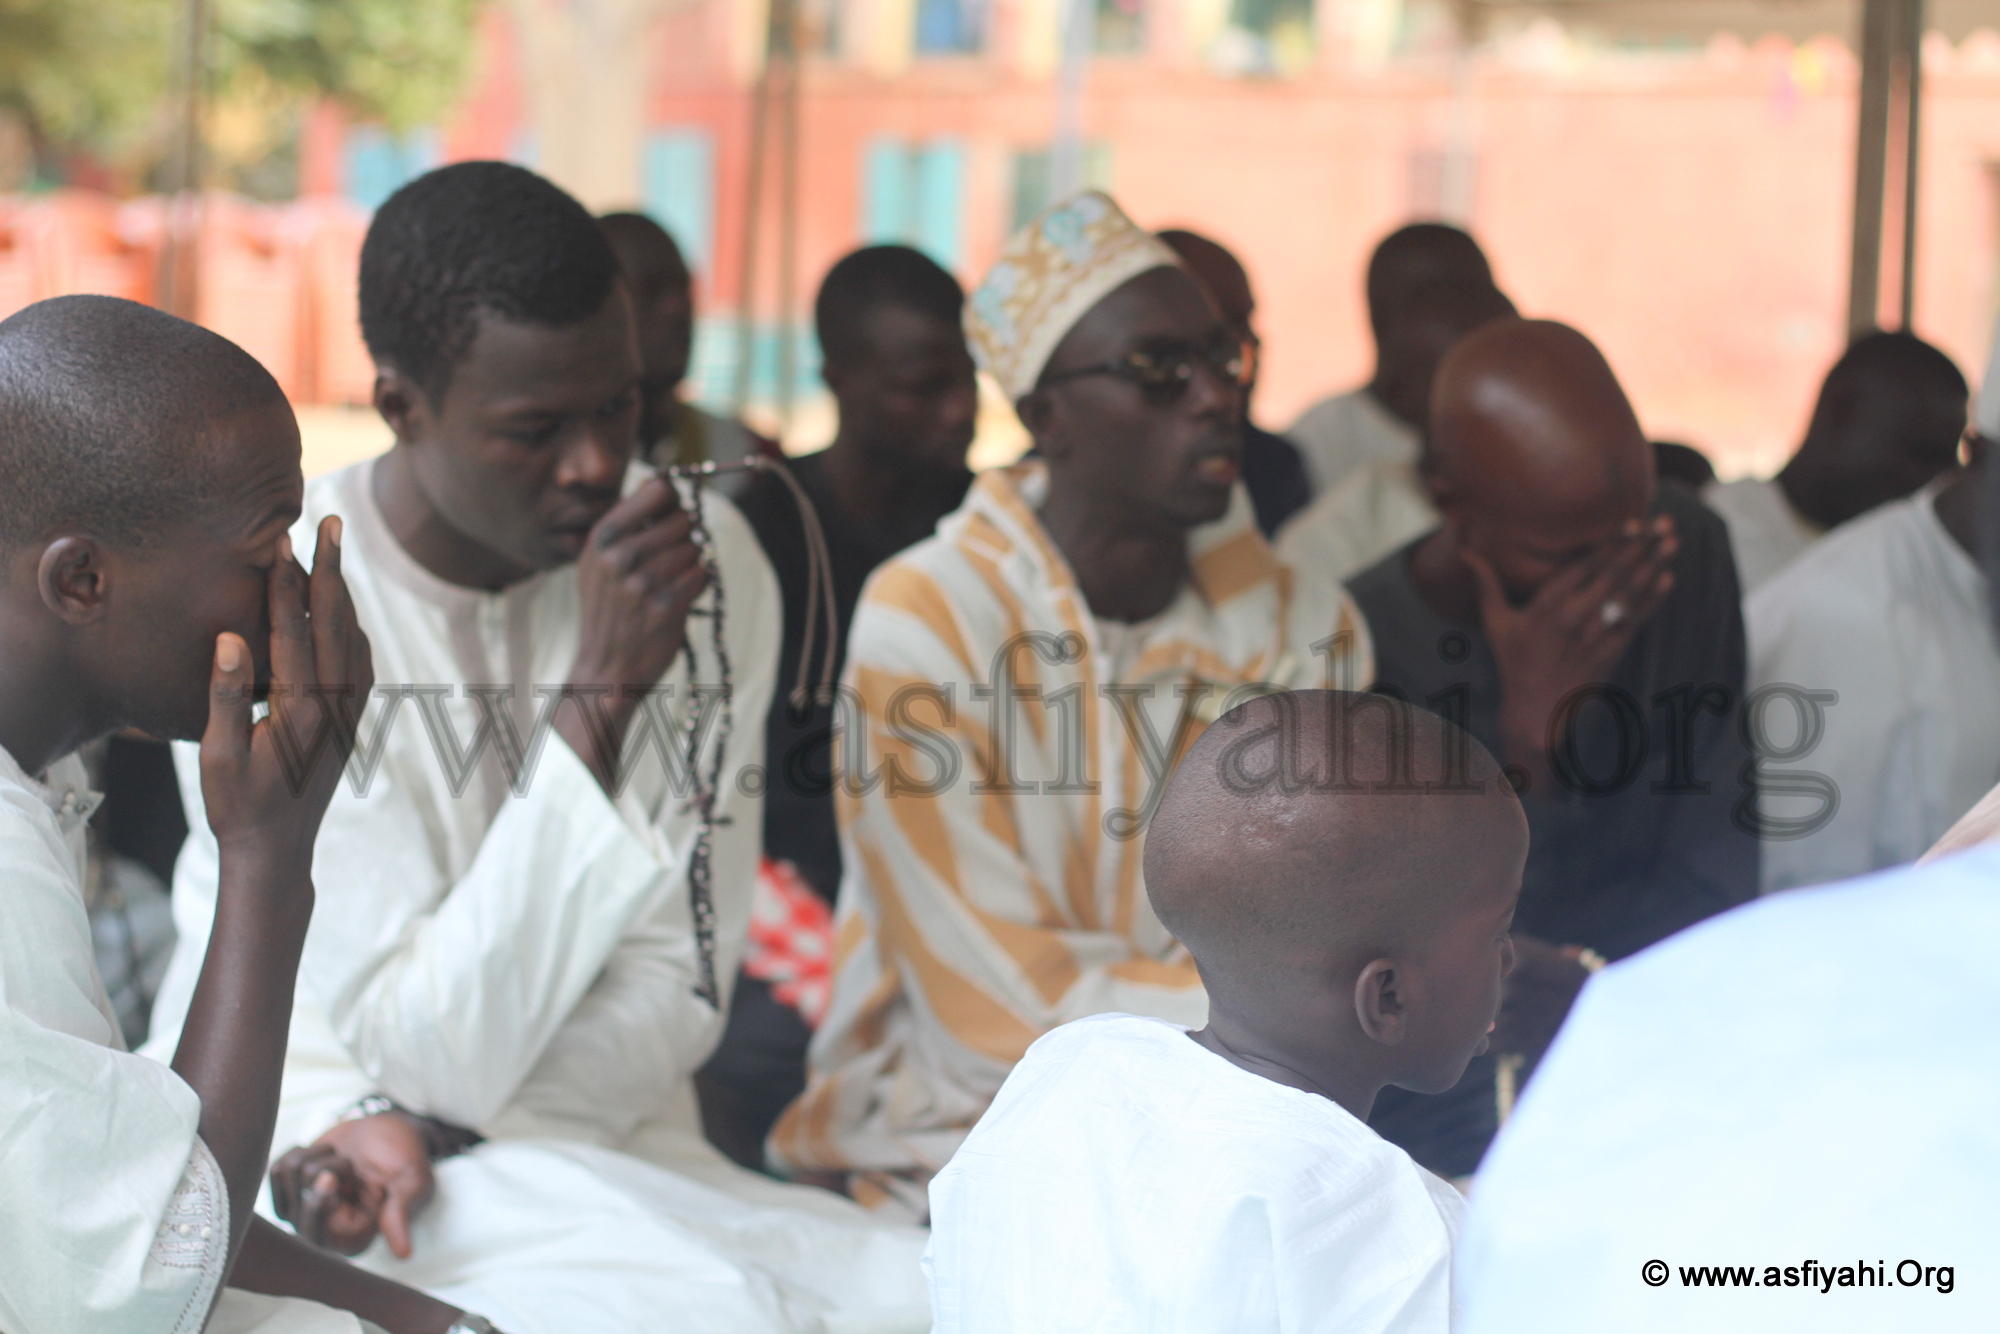 PHOTOS - Les Images de la Journée El Hadj Malick SY organisée sur l'île de Gorée ce Samedi 5 Décembre 2015 par le Diamiya des Jeunes Tidianes de Dakar Plateau , Gorée et environs